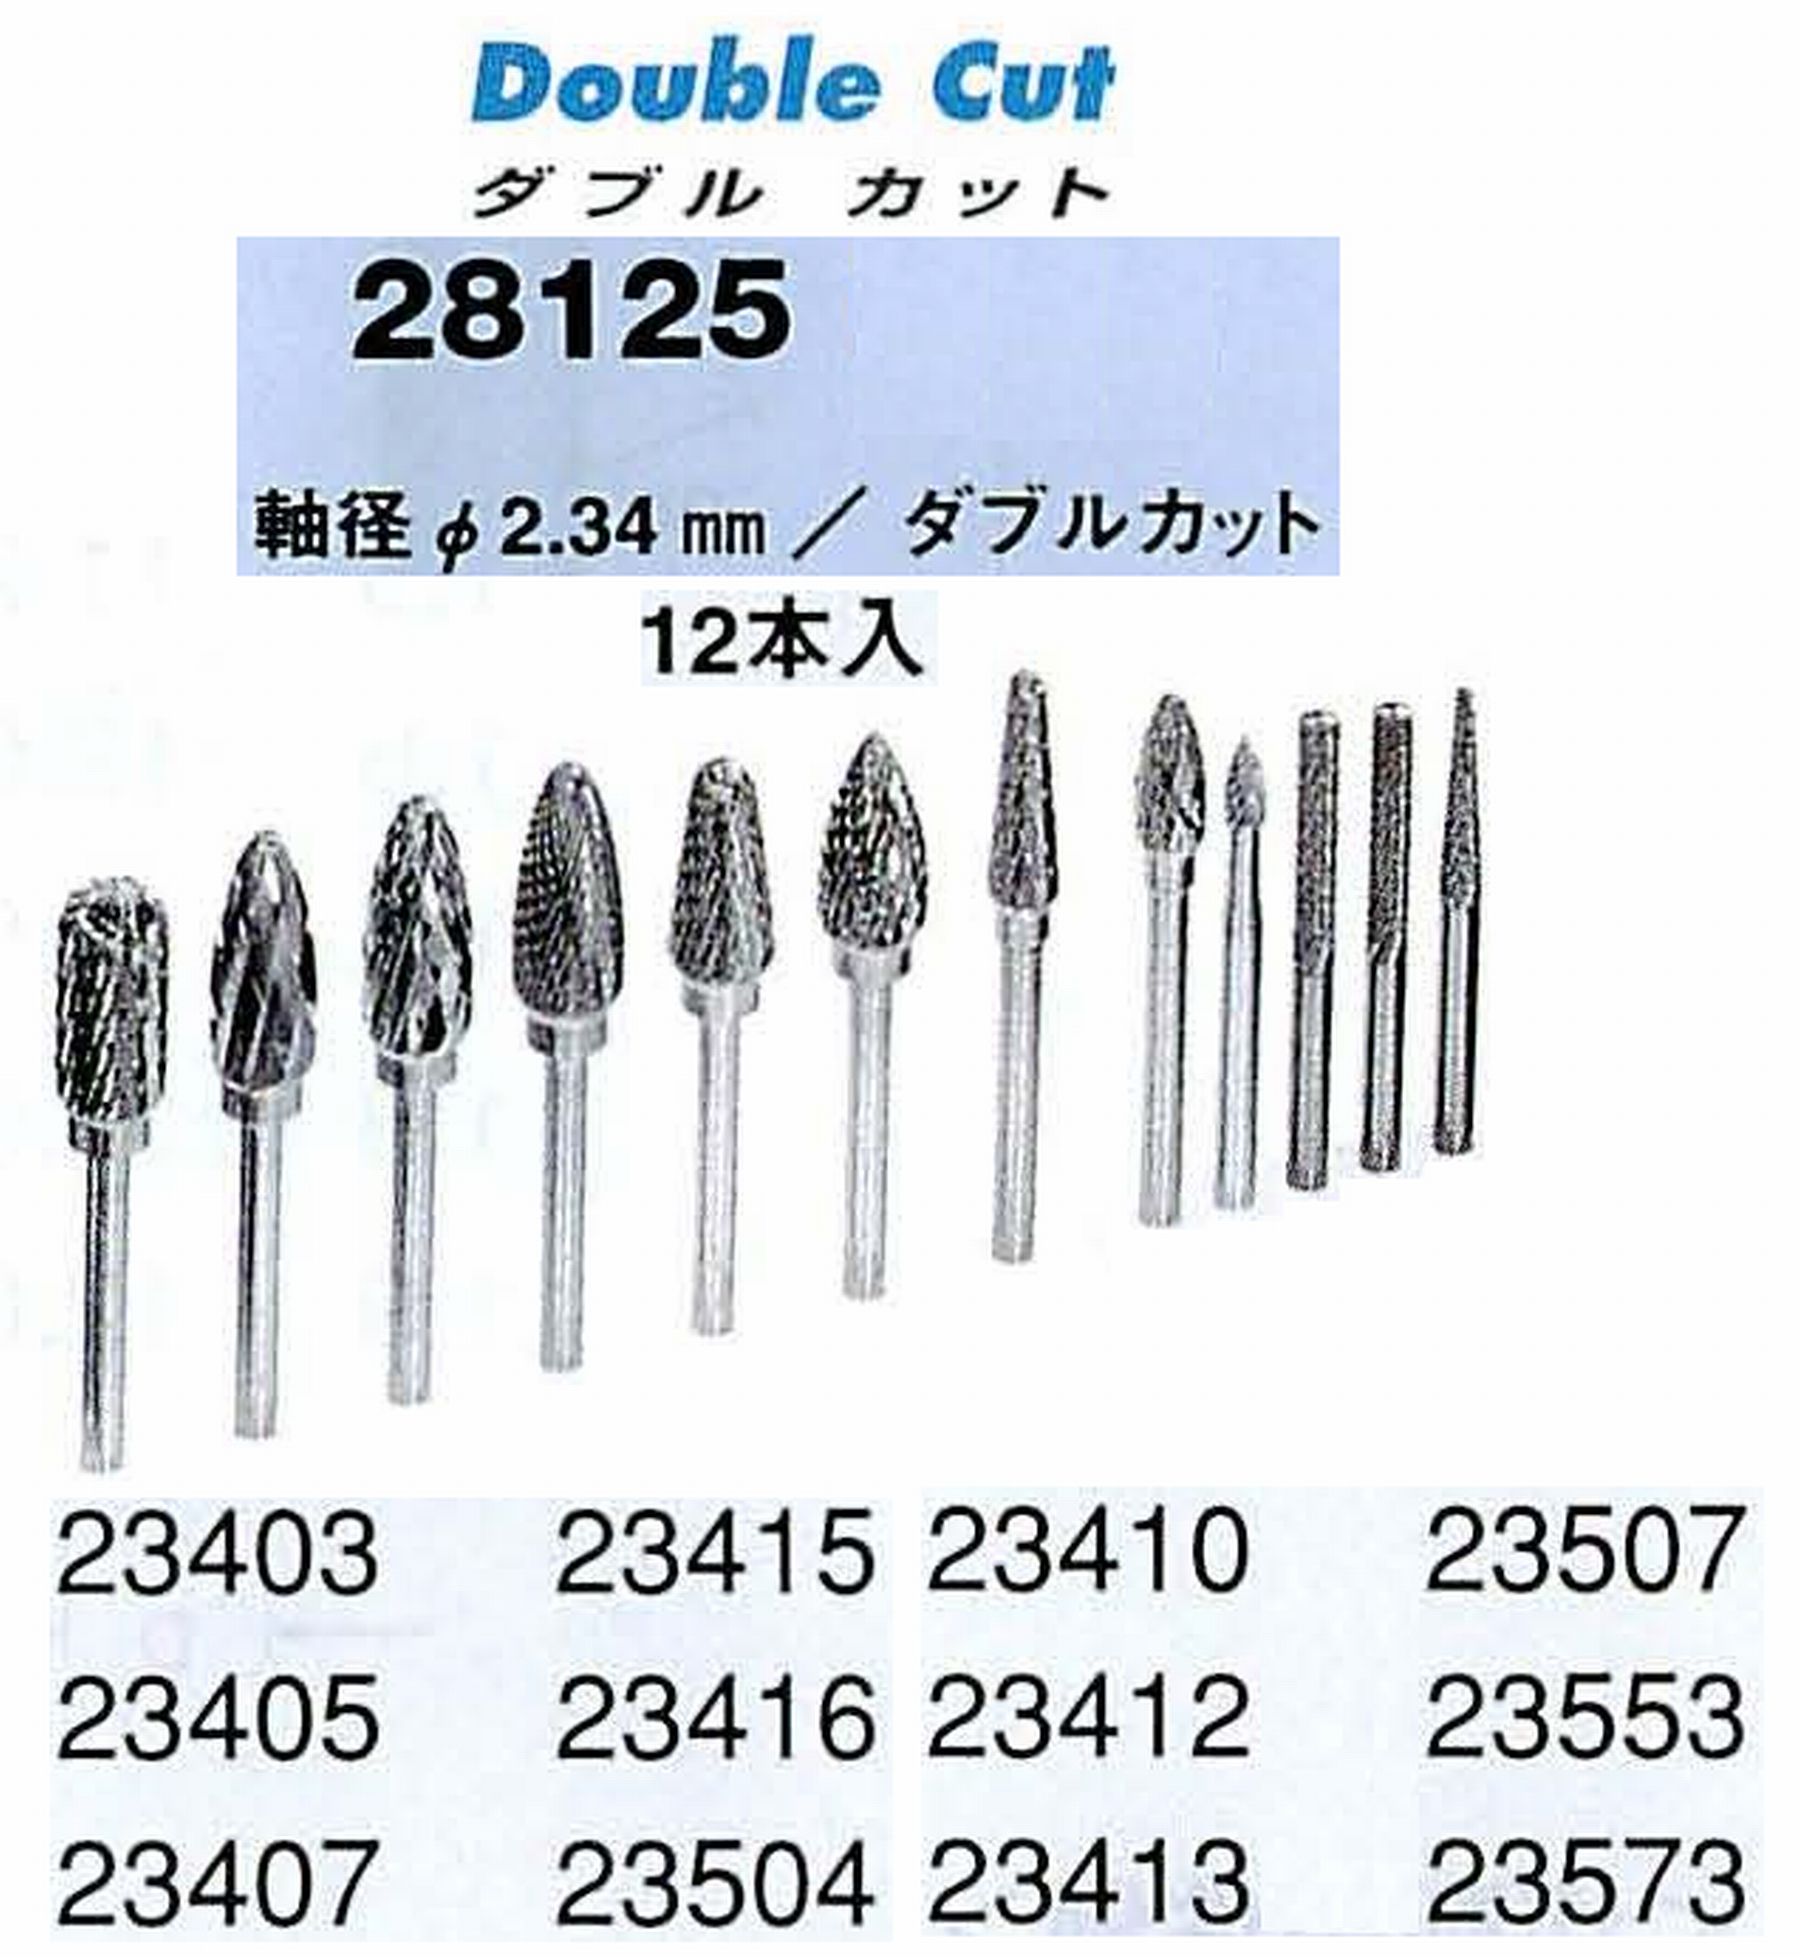 ナカニシ/NAKANISHI 超硬カッター アソートセット 軸径(シャンク)φ2.34mm 28125